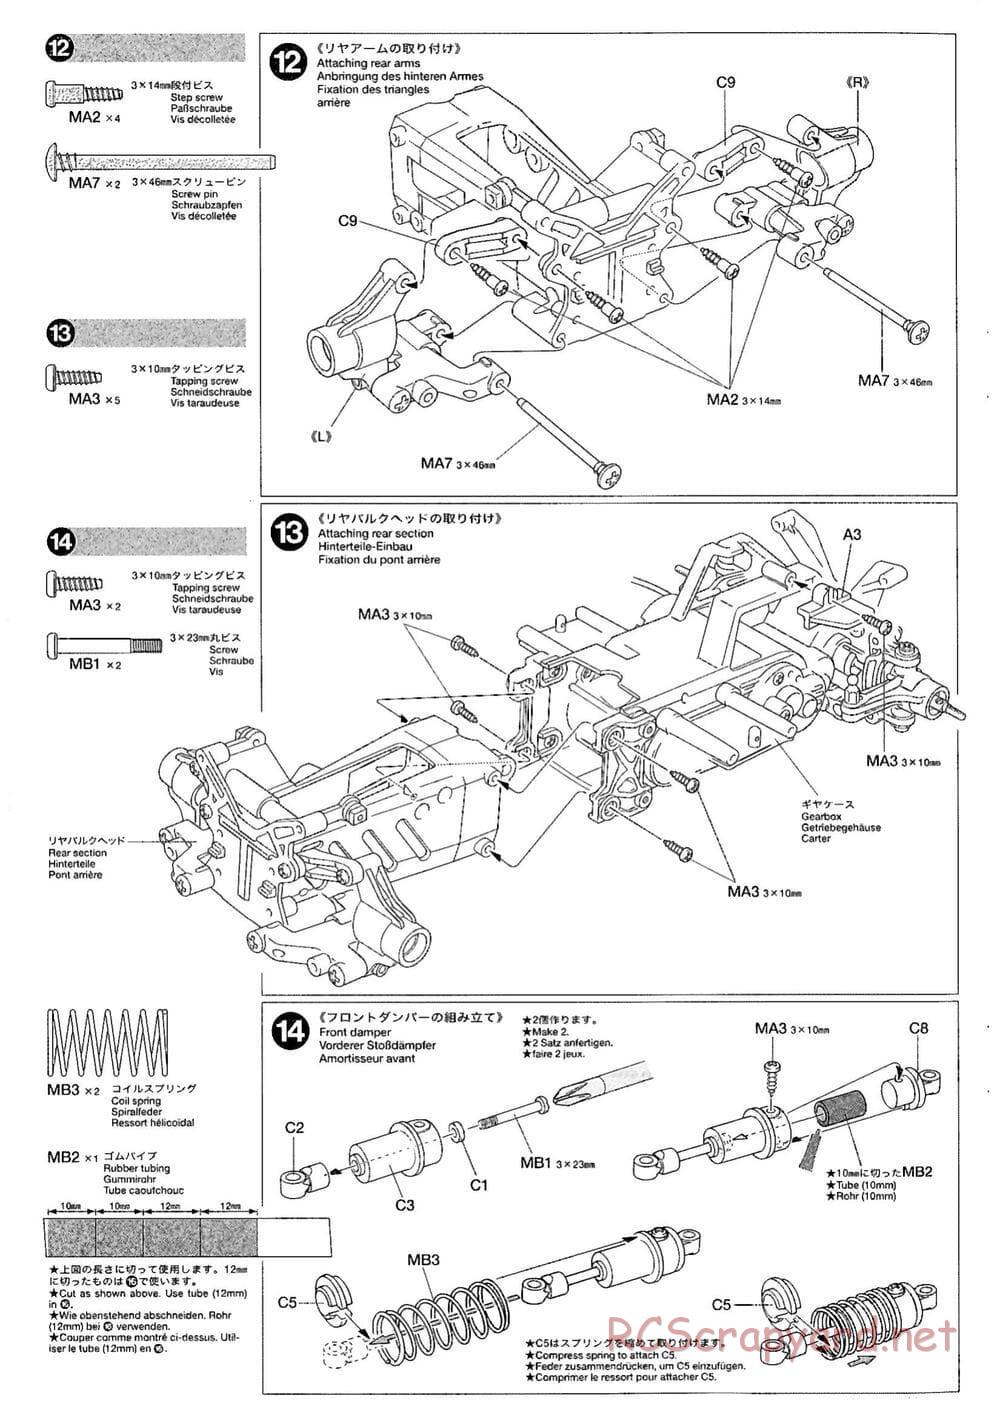 Tamiya - M-03M Chassis - Manual - Page 8